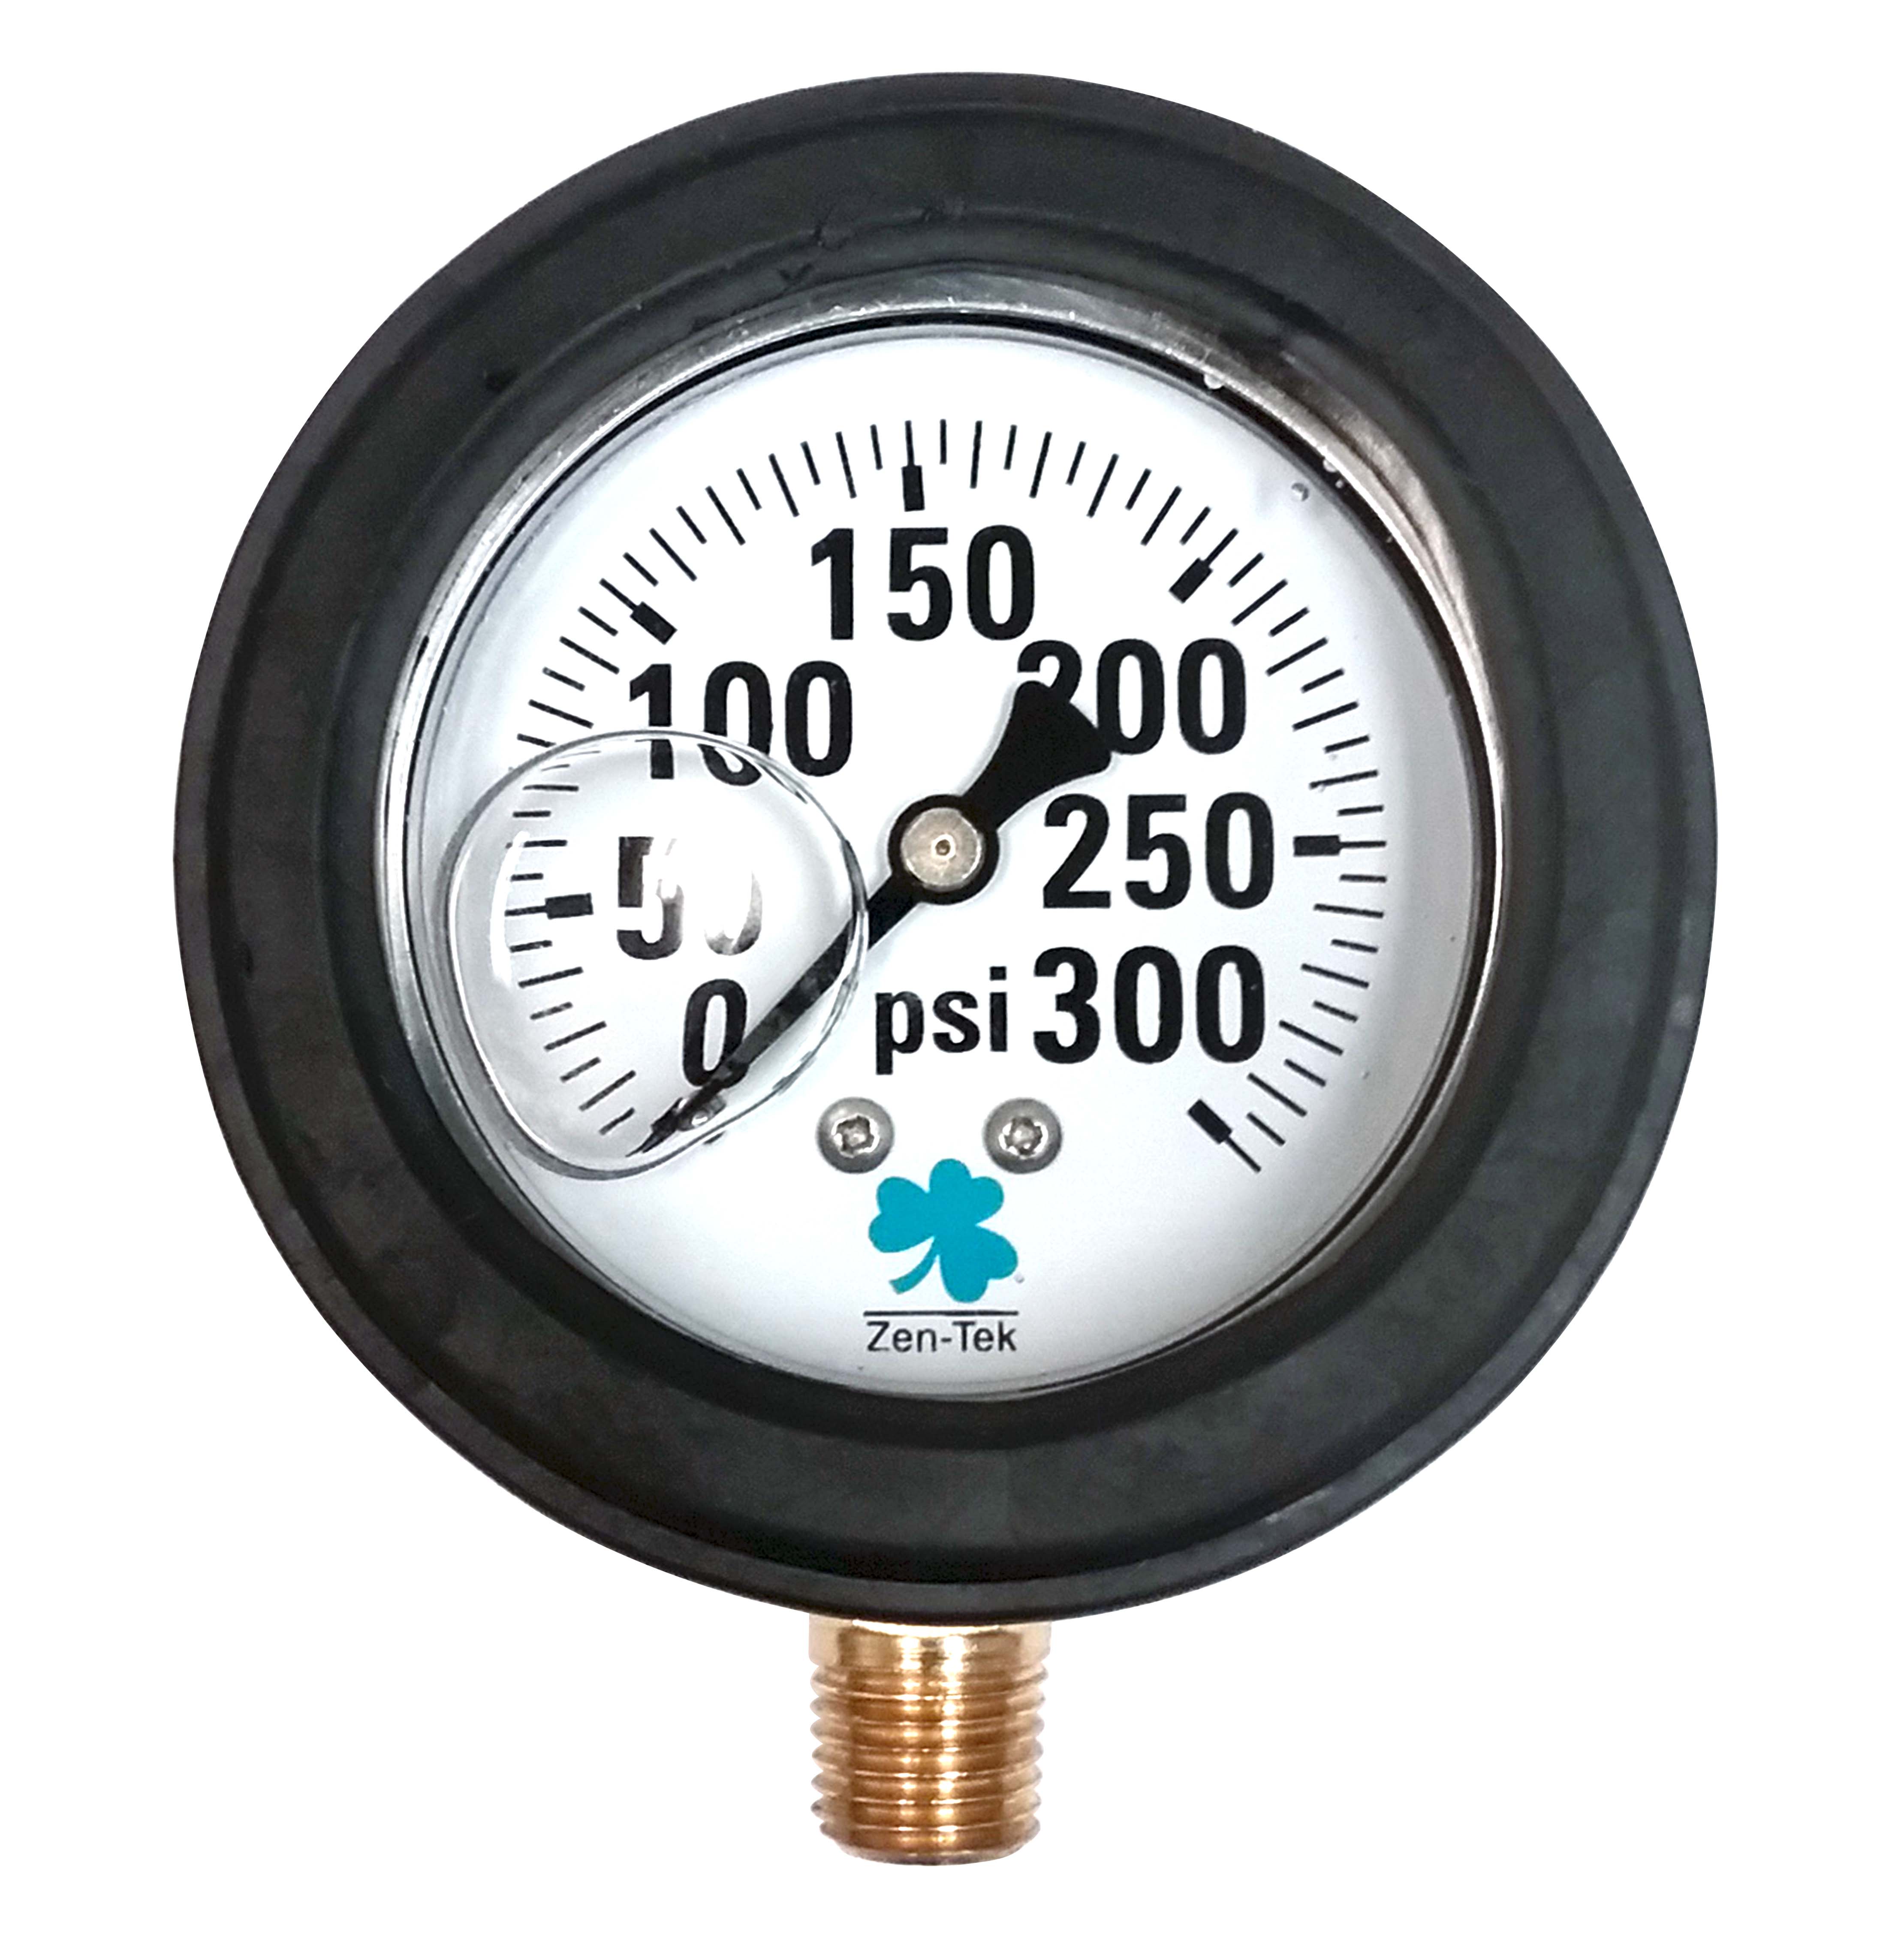 Zenport Pressure Gauge Protector DN62 Rubber Regulator Gauge Protector - Click Image to Close